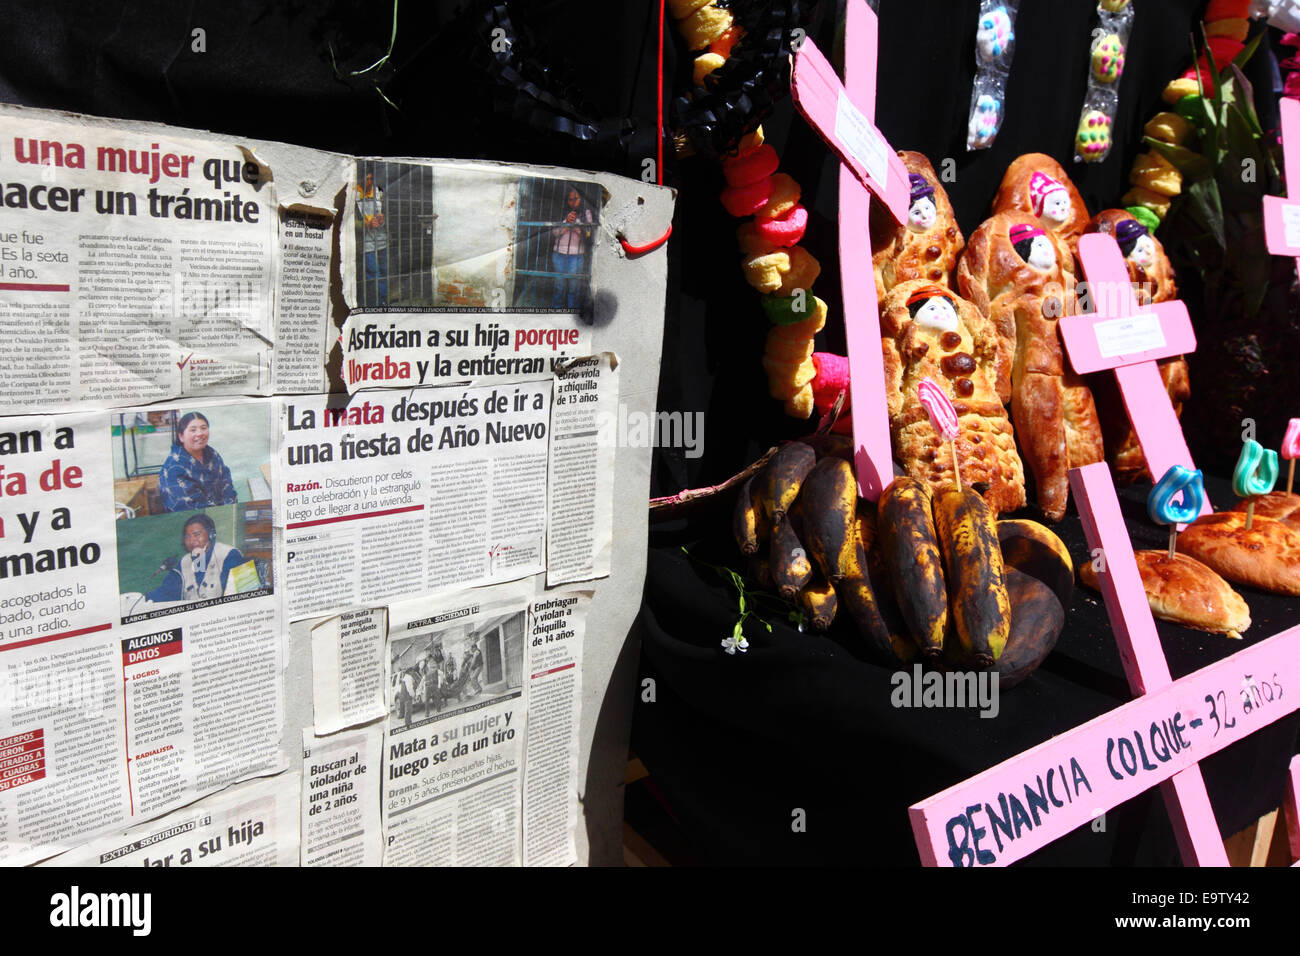 EL ALTO, Bolivien, 2. November 2014. Detail eines typischen Altar oder Mesa für Todos Santos-Festival mit Zeitungsberichte über Fälle von Frauen, die Opfer der Frauenmorde und häuslicher Gewalt sind. Diese Altäre sind gebaut, um die Seelen von geliebten Menschen begrüßen, die es geglaubt wird, Rückkehr zur Erde am 1. November, um ihre Familien zu besuchen. Zunehmend wird das Festival auch eingesetzt, um Opfer von Verbrechen und Gewalt zu markieren. Laut einem Bericht der WHO im Januar 2013 ist Bolivien das Land mit der höchsten Rate der Gewalt gegen Frauen in Lateinamerika. Bildnachweis: James Brunker / Alamy Live News Stockfoto